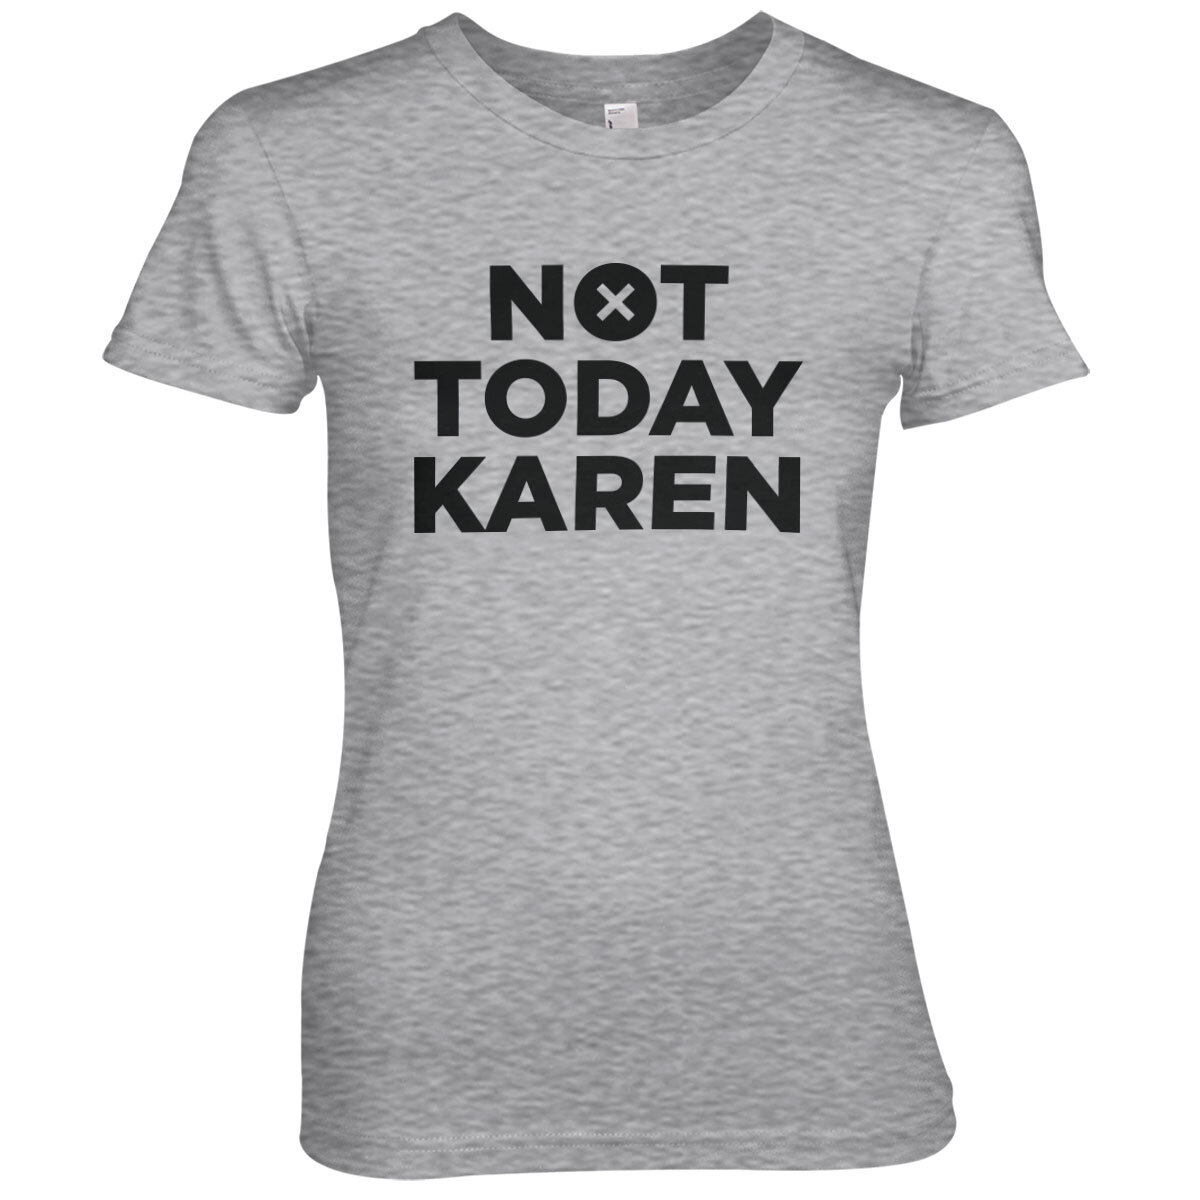 Not Today Karen Girly Tee